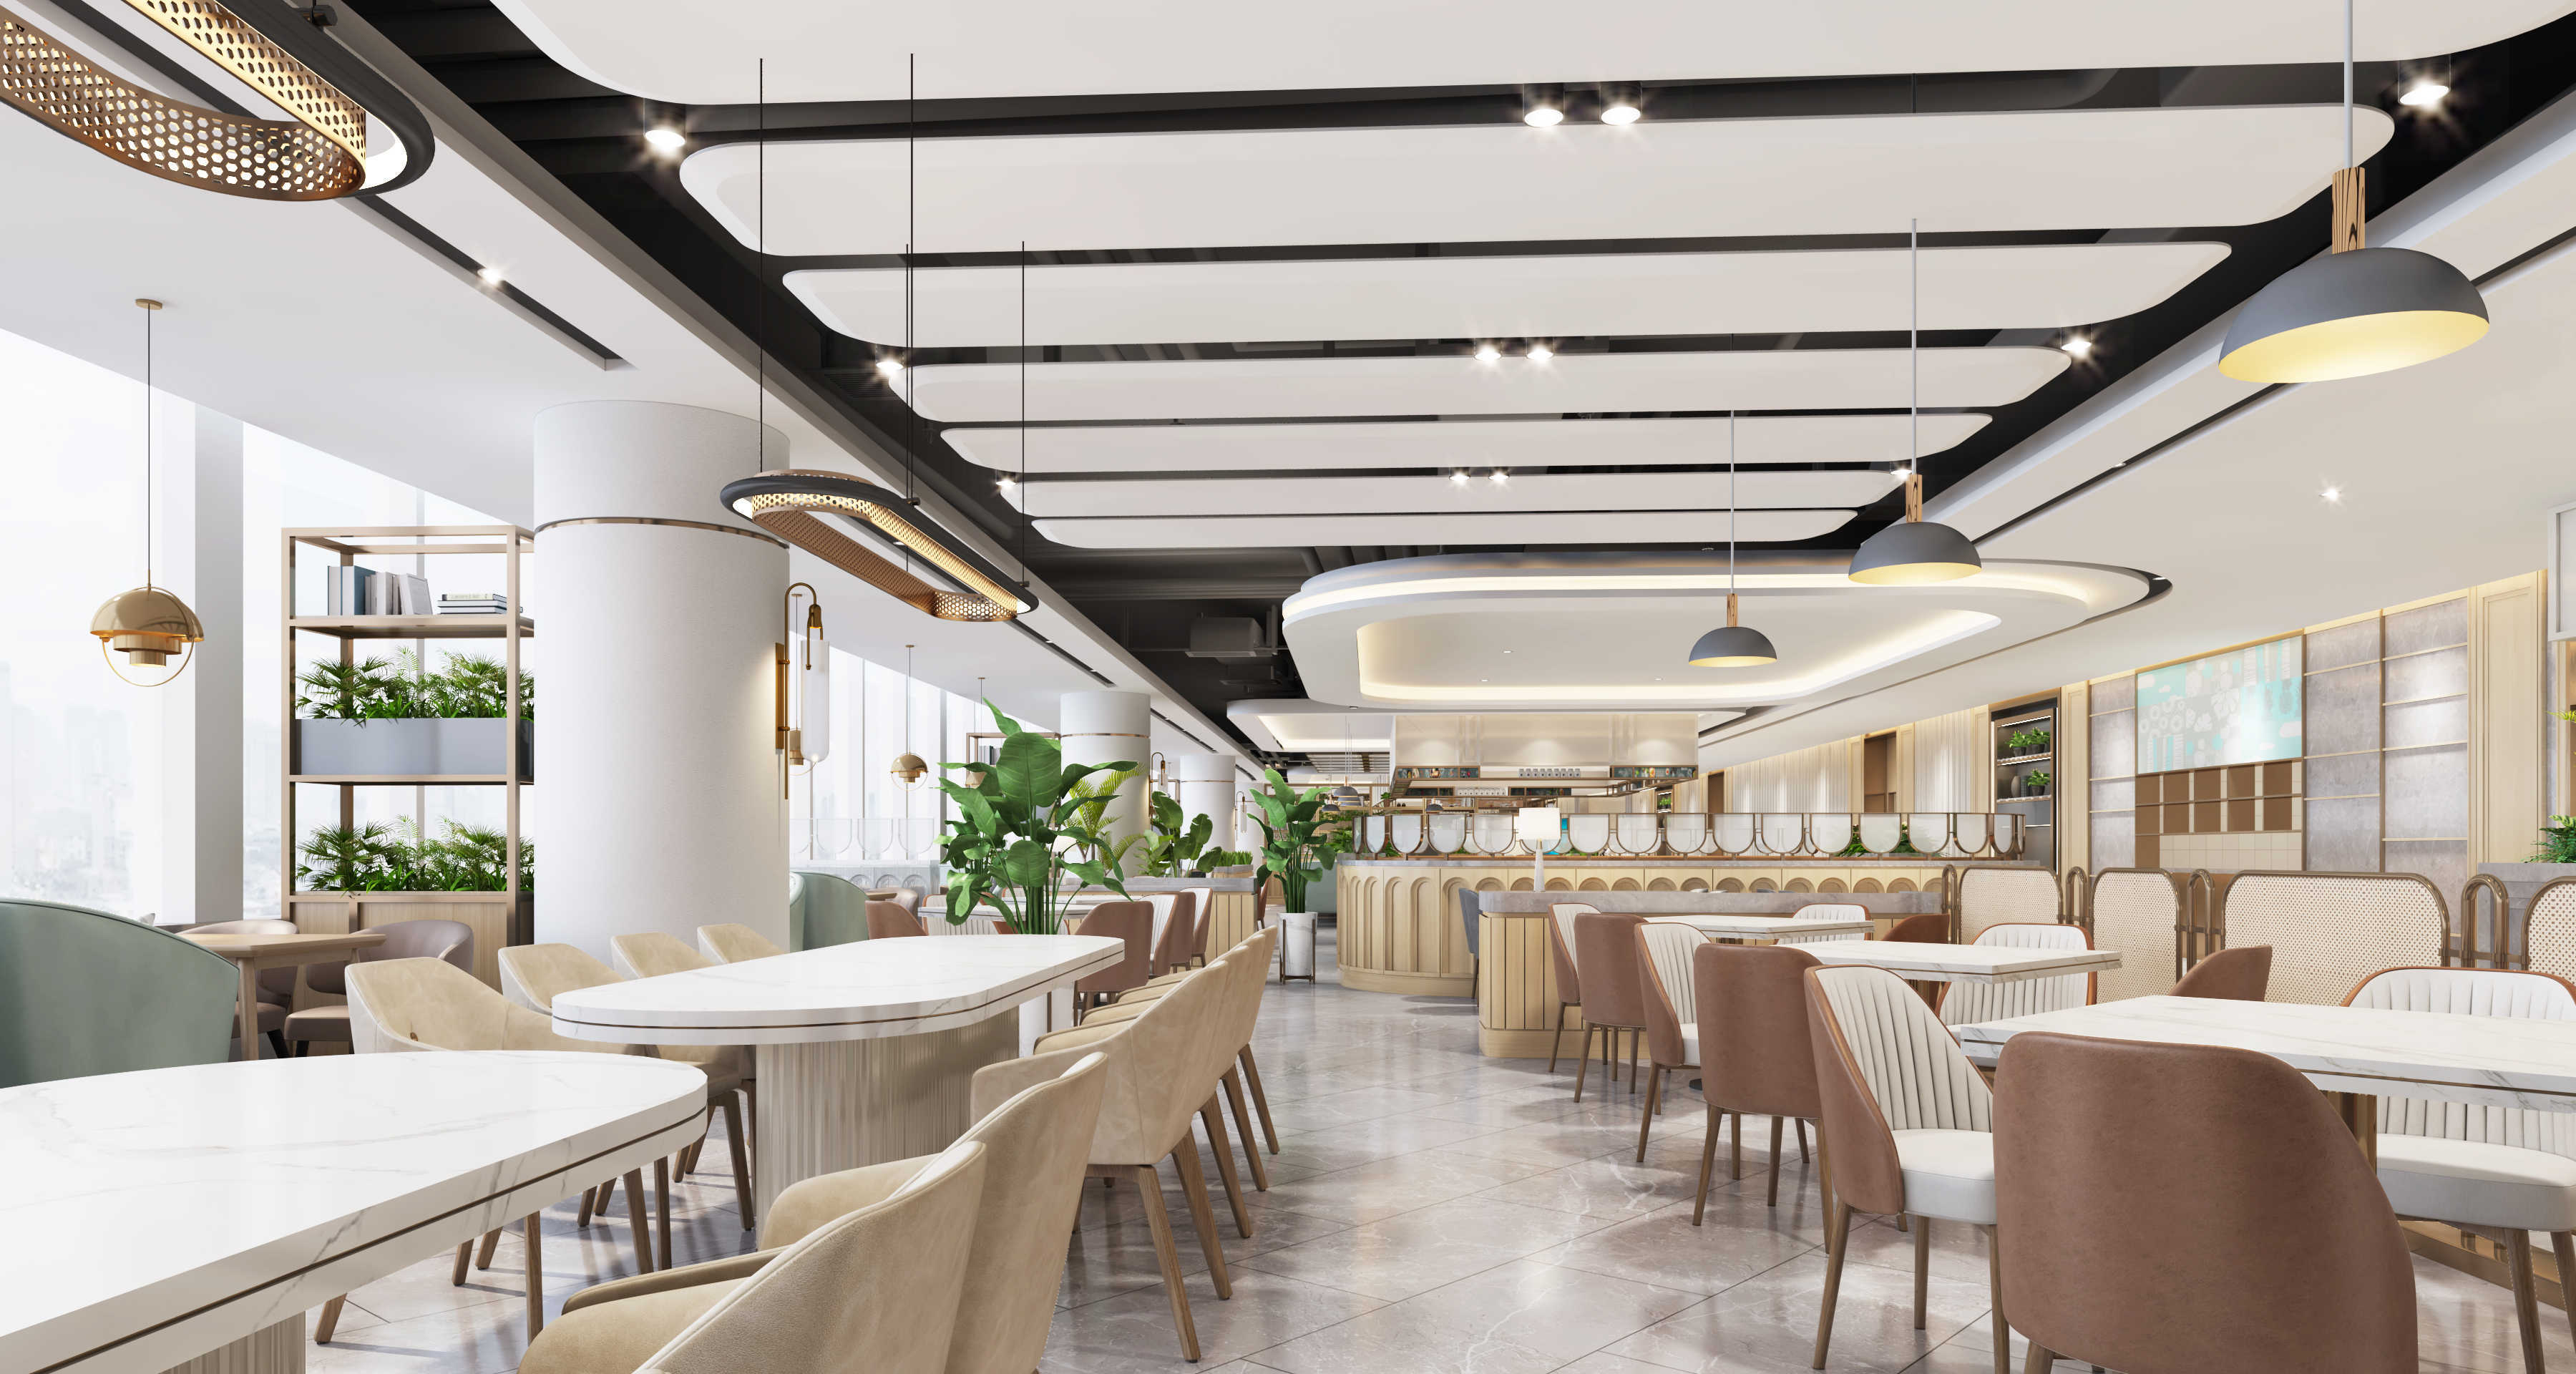 良好的餐厅氛围该如何设计打造?_上海赫筑餐饮空间设计事务所